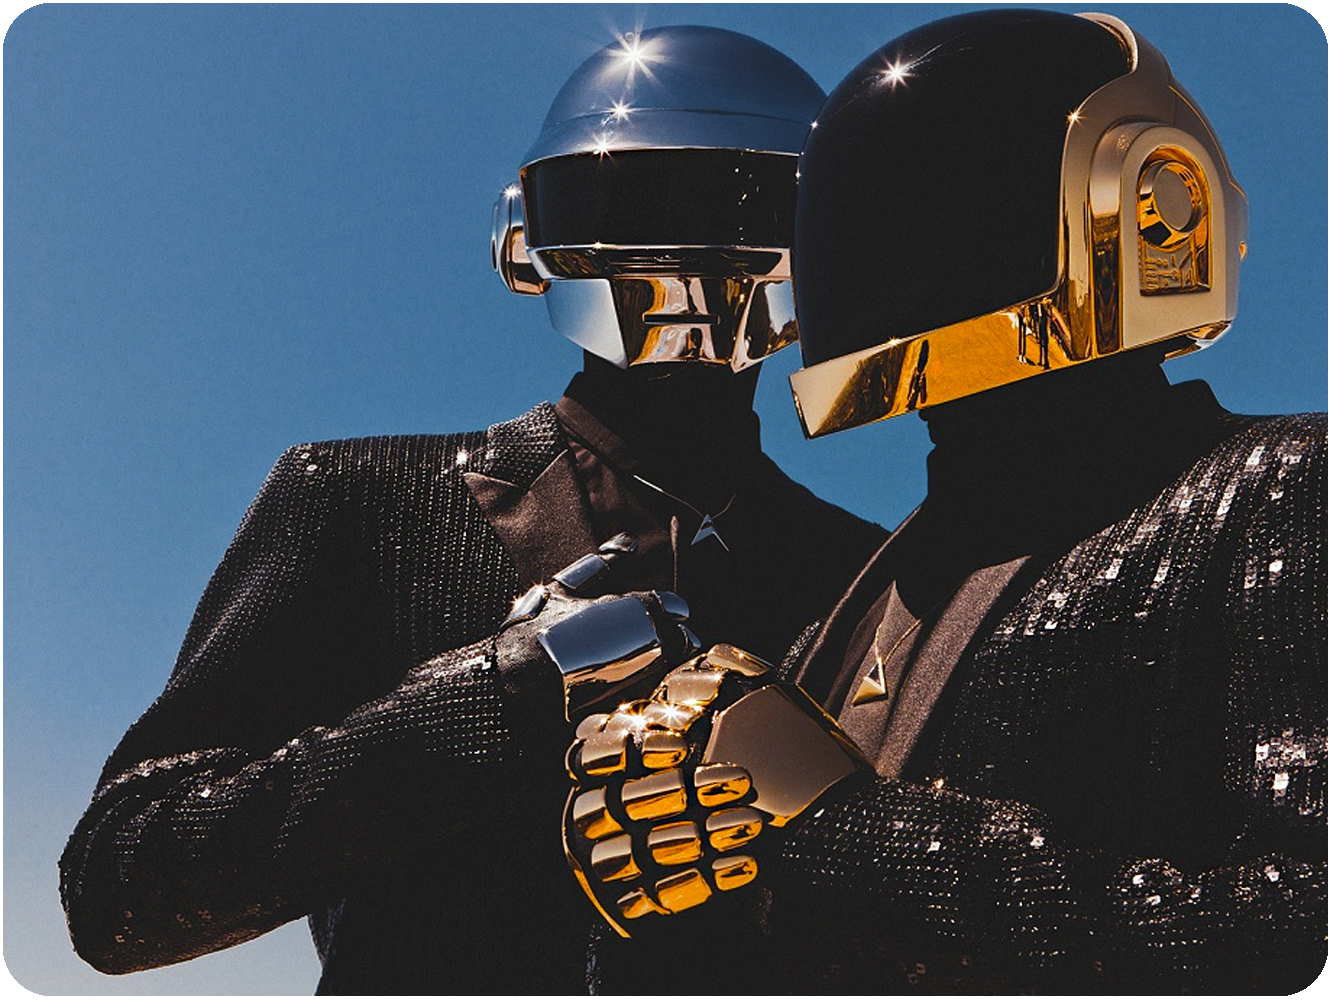  Daft Punk anuncian su separación tras 28 años juntos con ‘Epilogue’